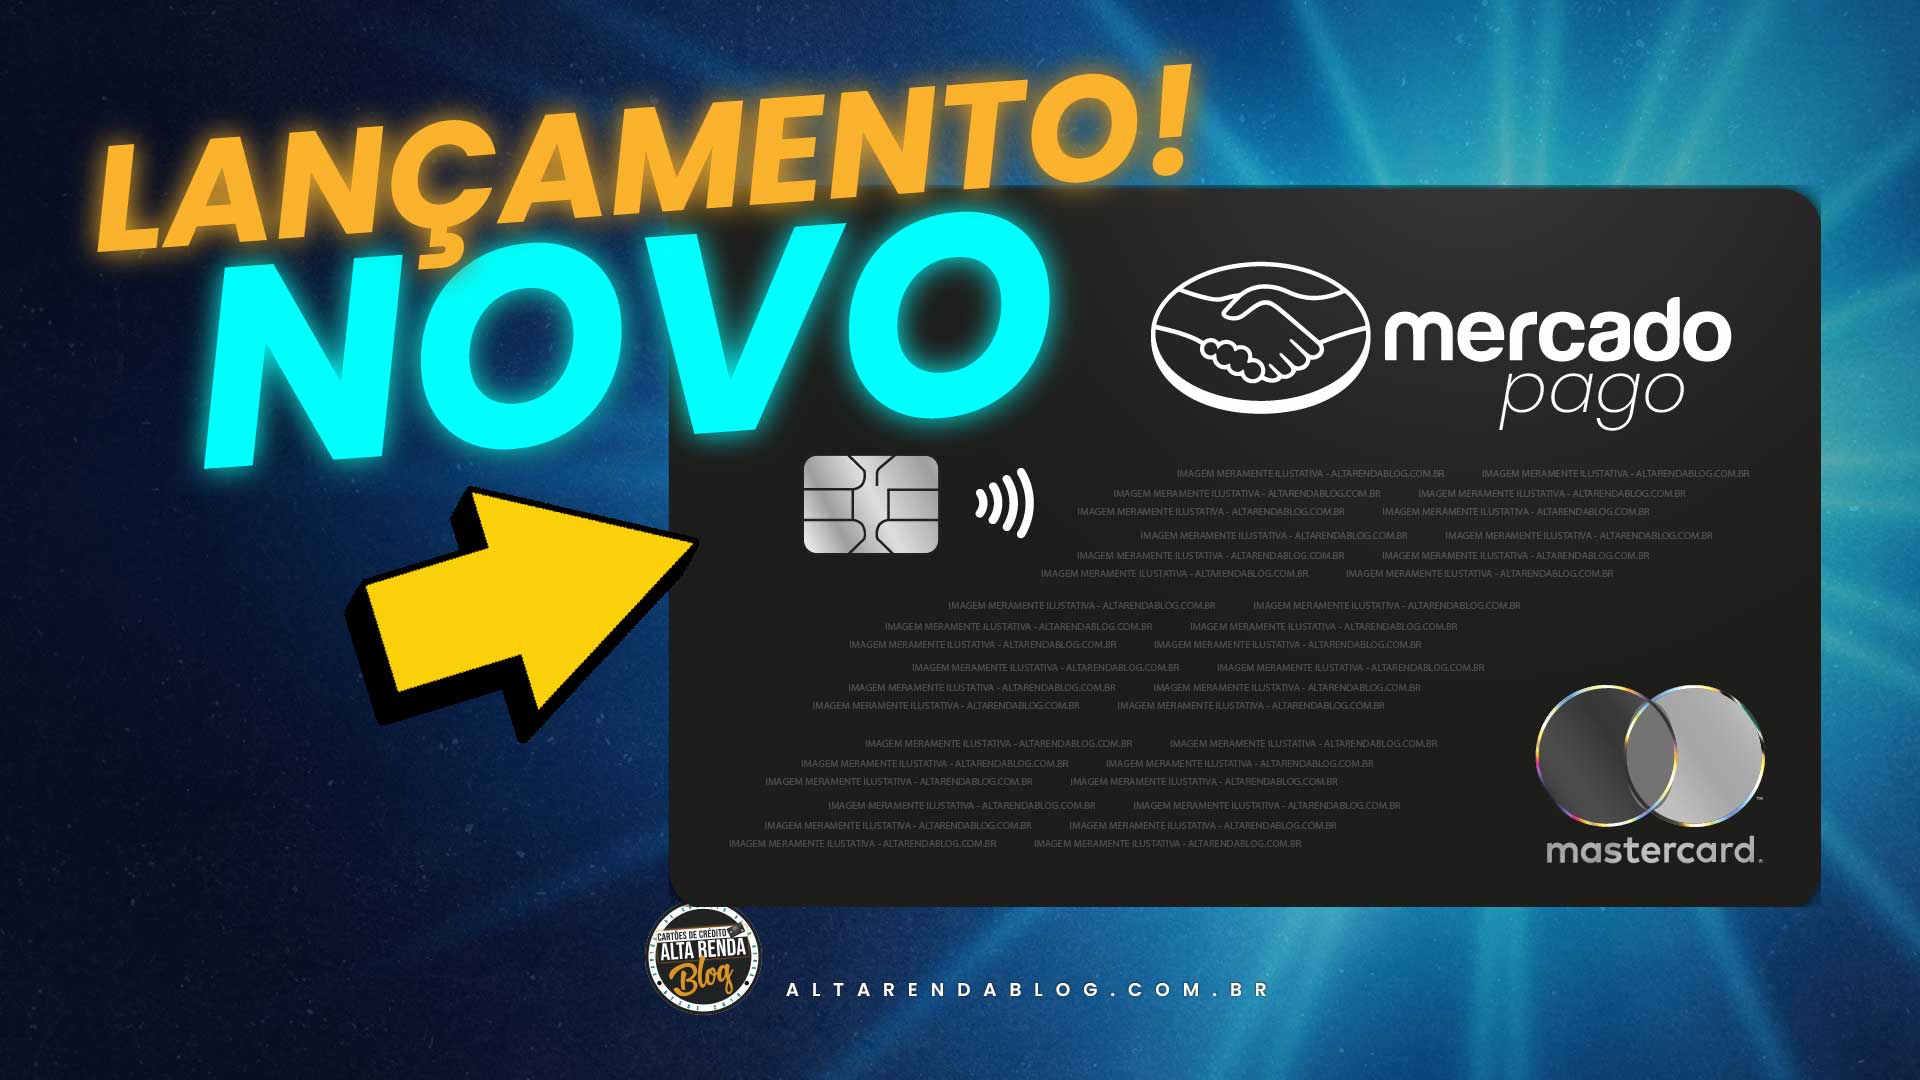 IncrÍvel Mercado Pago Lança Novo Cartão De Crédito Flexibilidade Financeira Alta Renda Blog 5746